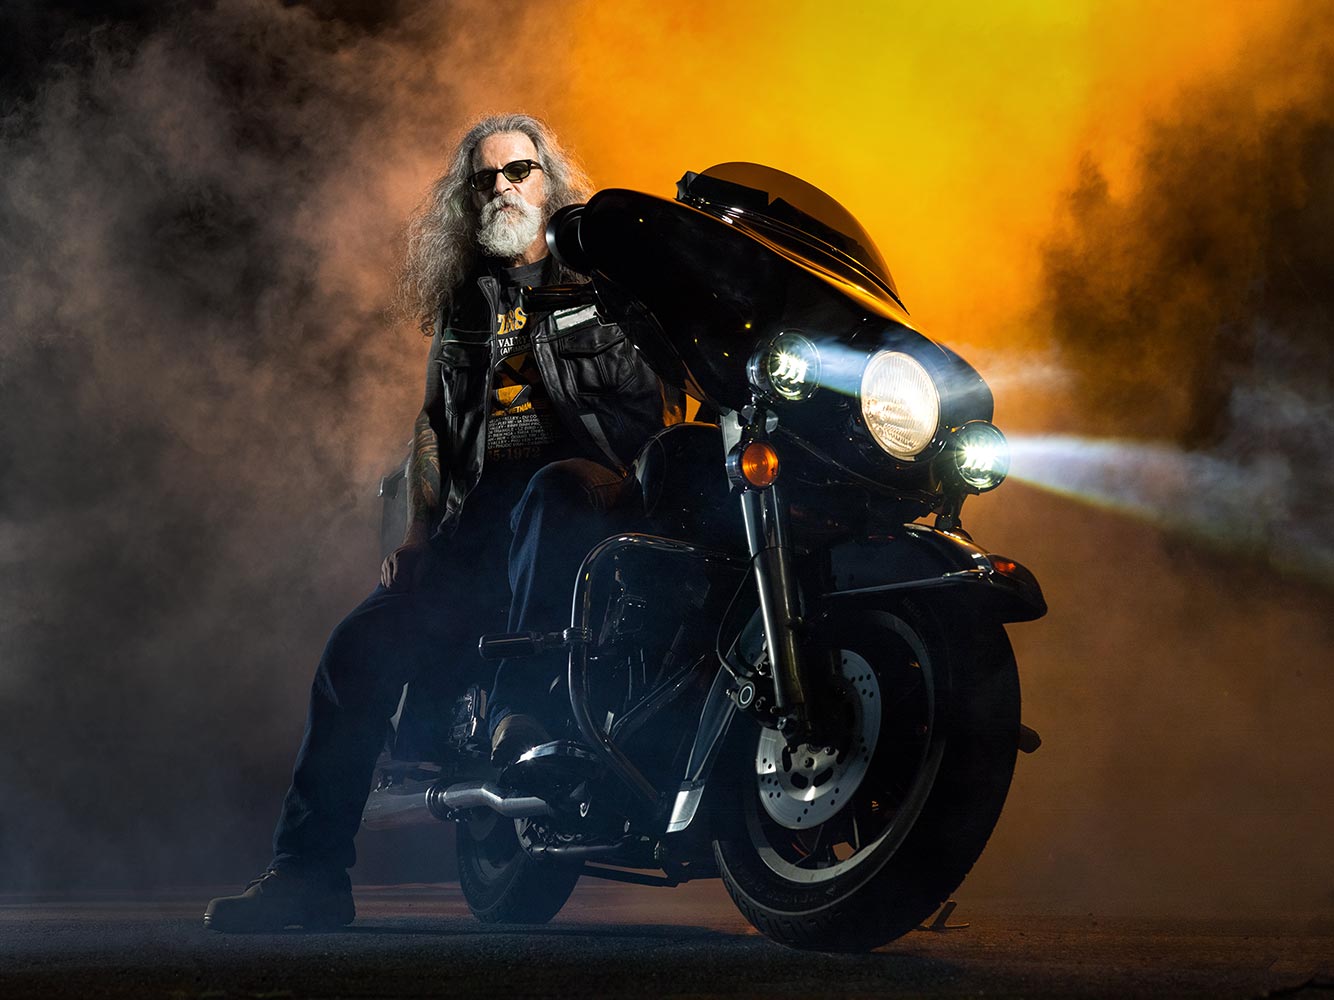 Harley_motorcycle